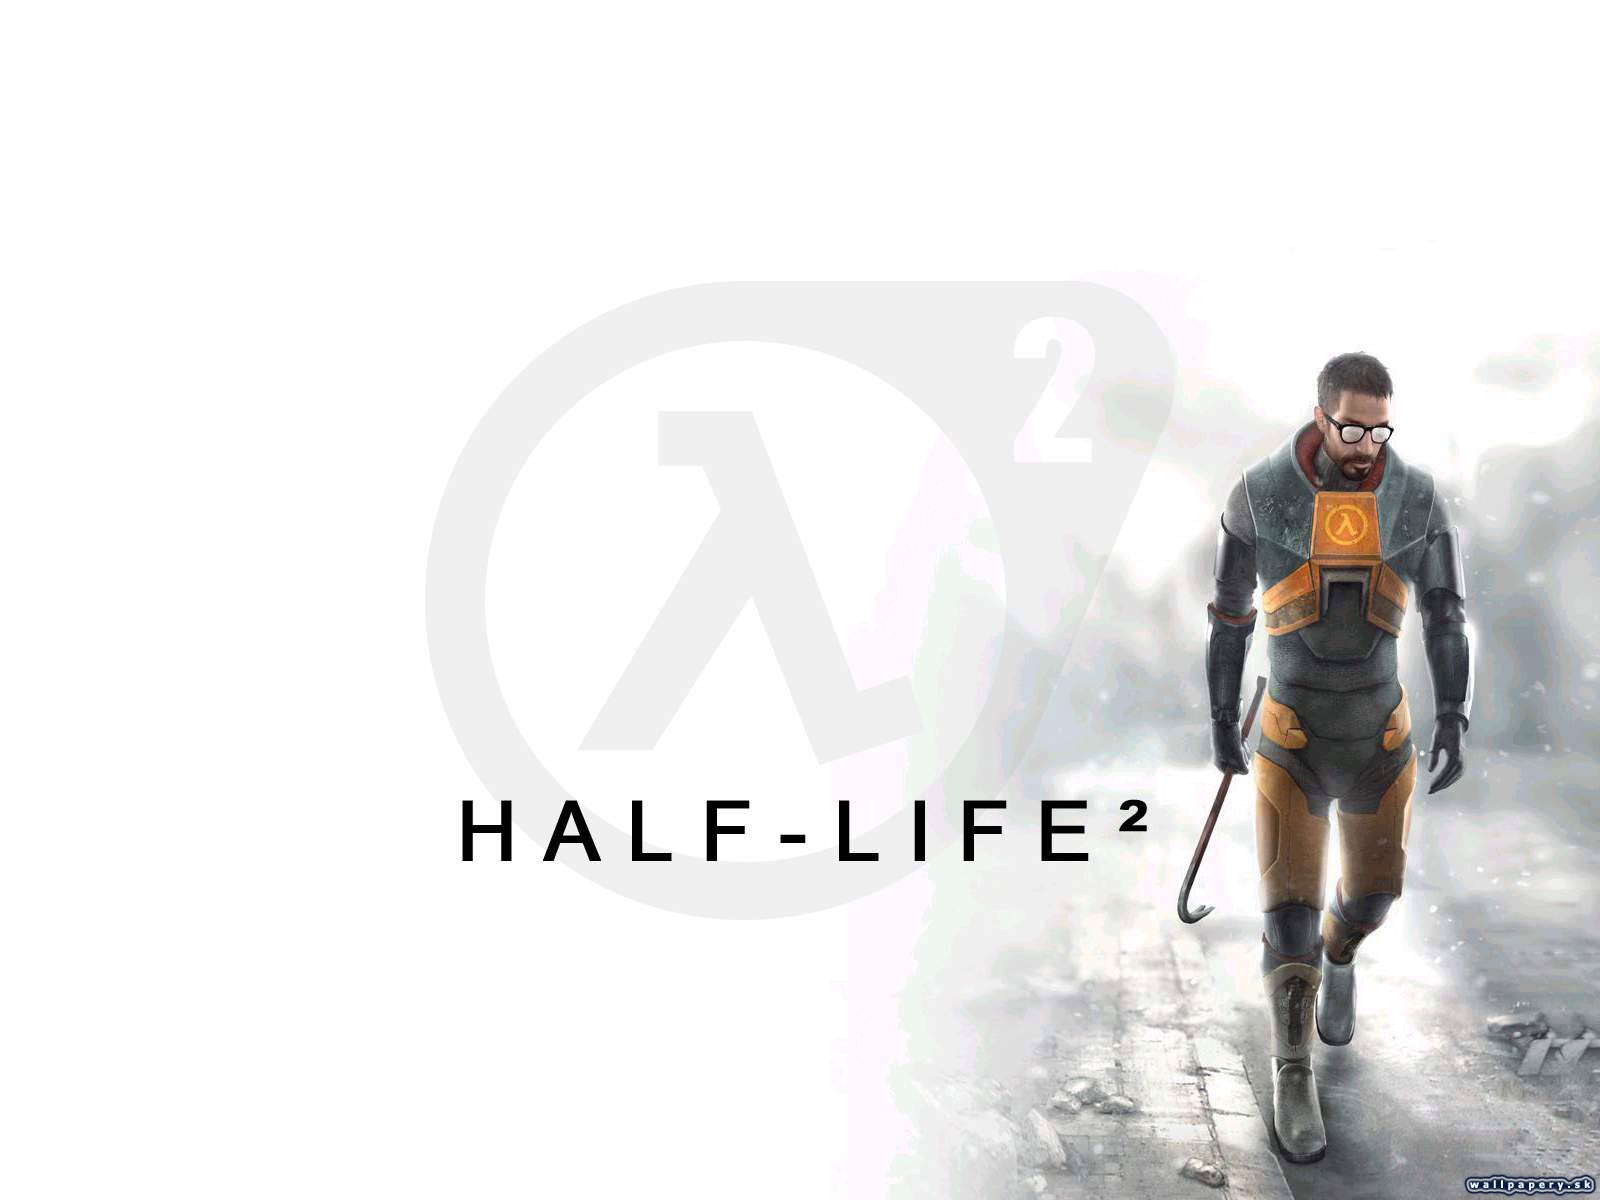 2life. Half Life 2 обложка. Half Life 2 Ep 2 обложка. Half Life 1 обложка. Half Life 2 обои.